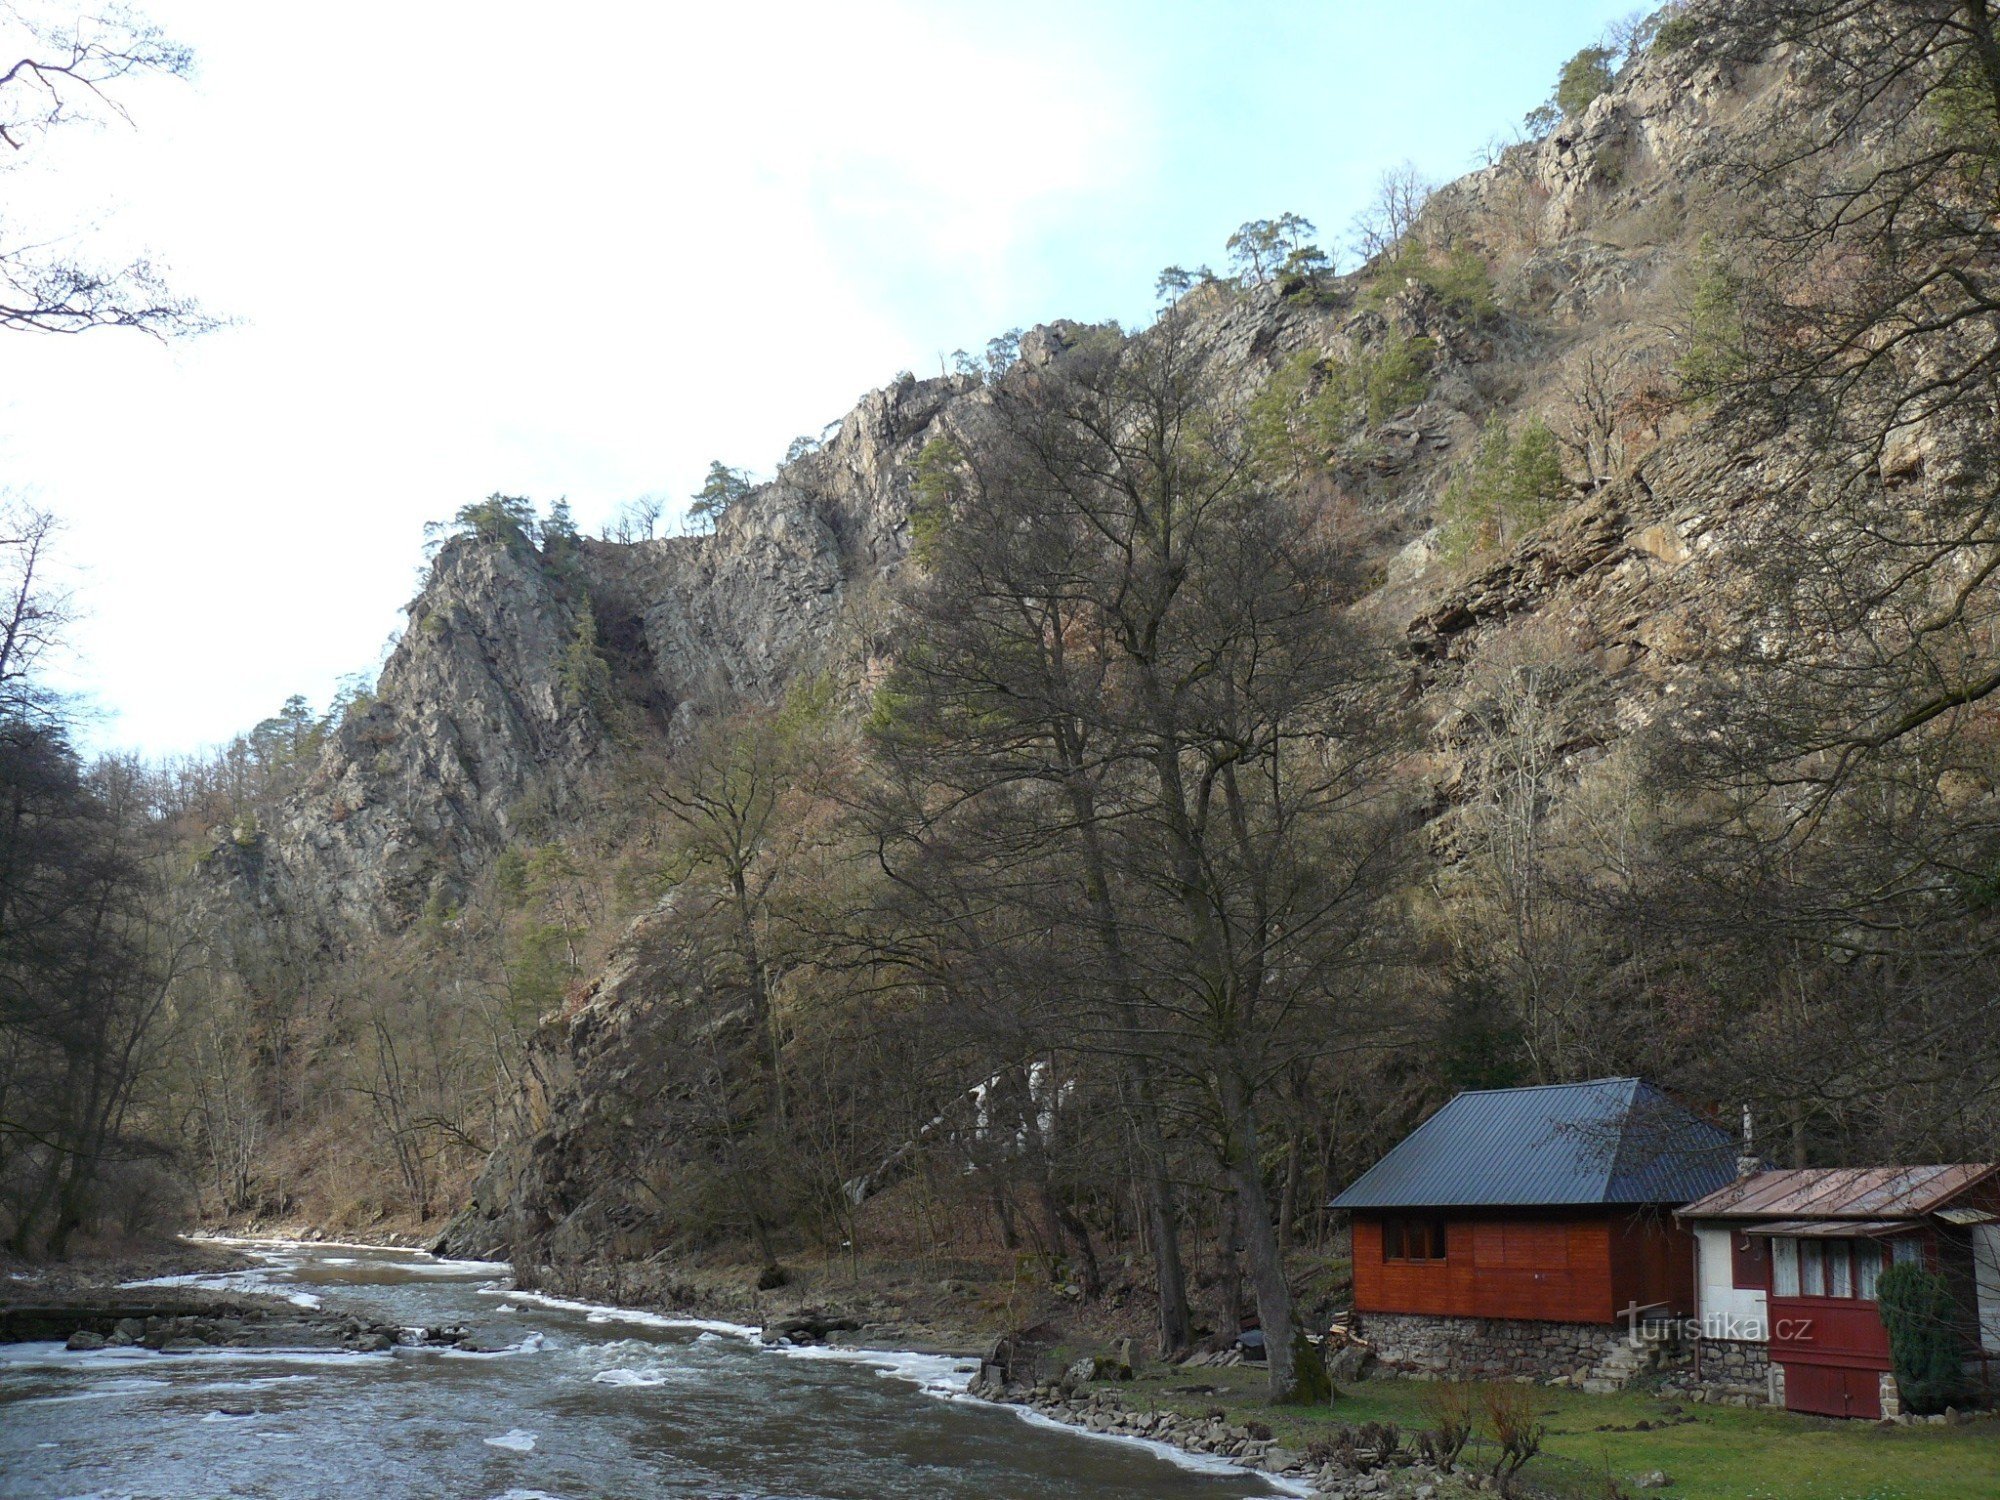 Thung lũng sông Oslava